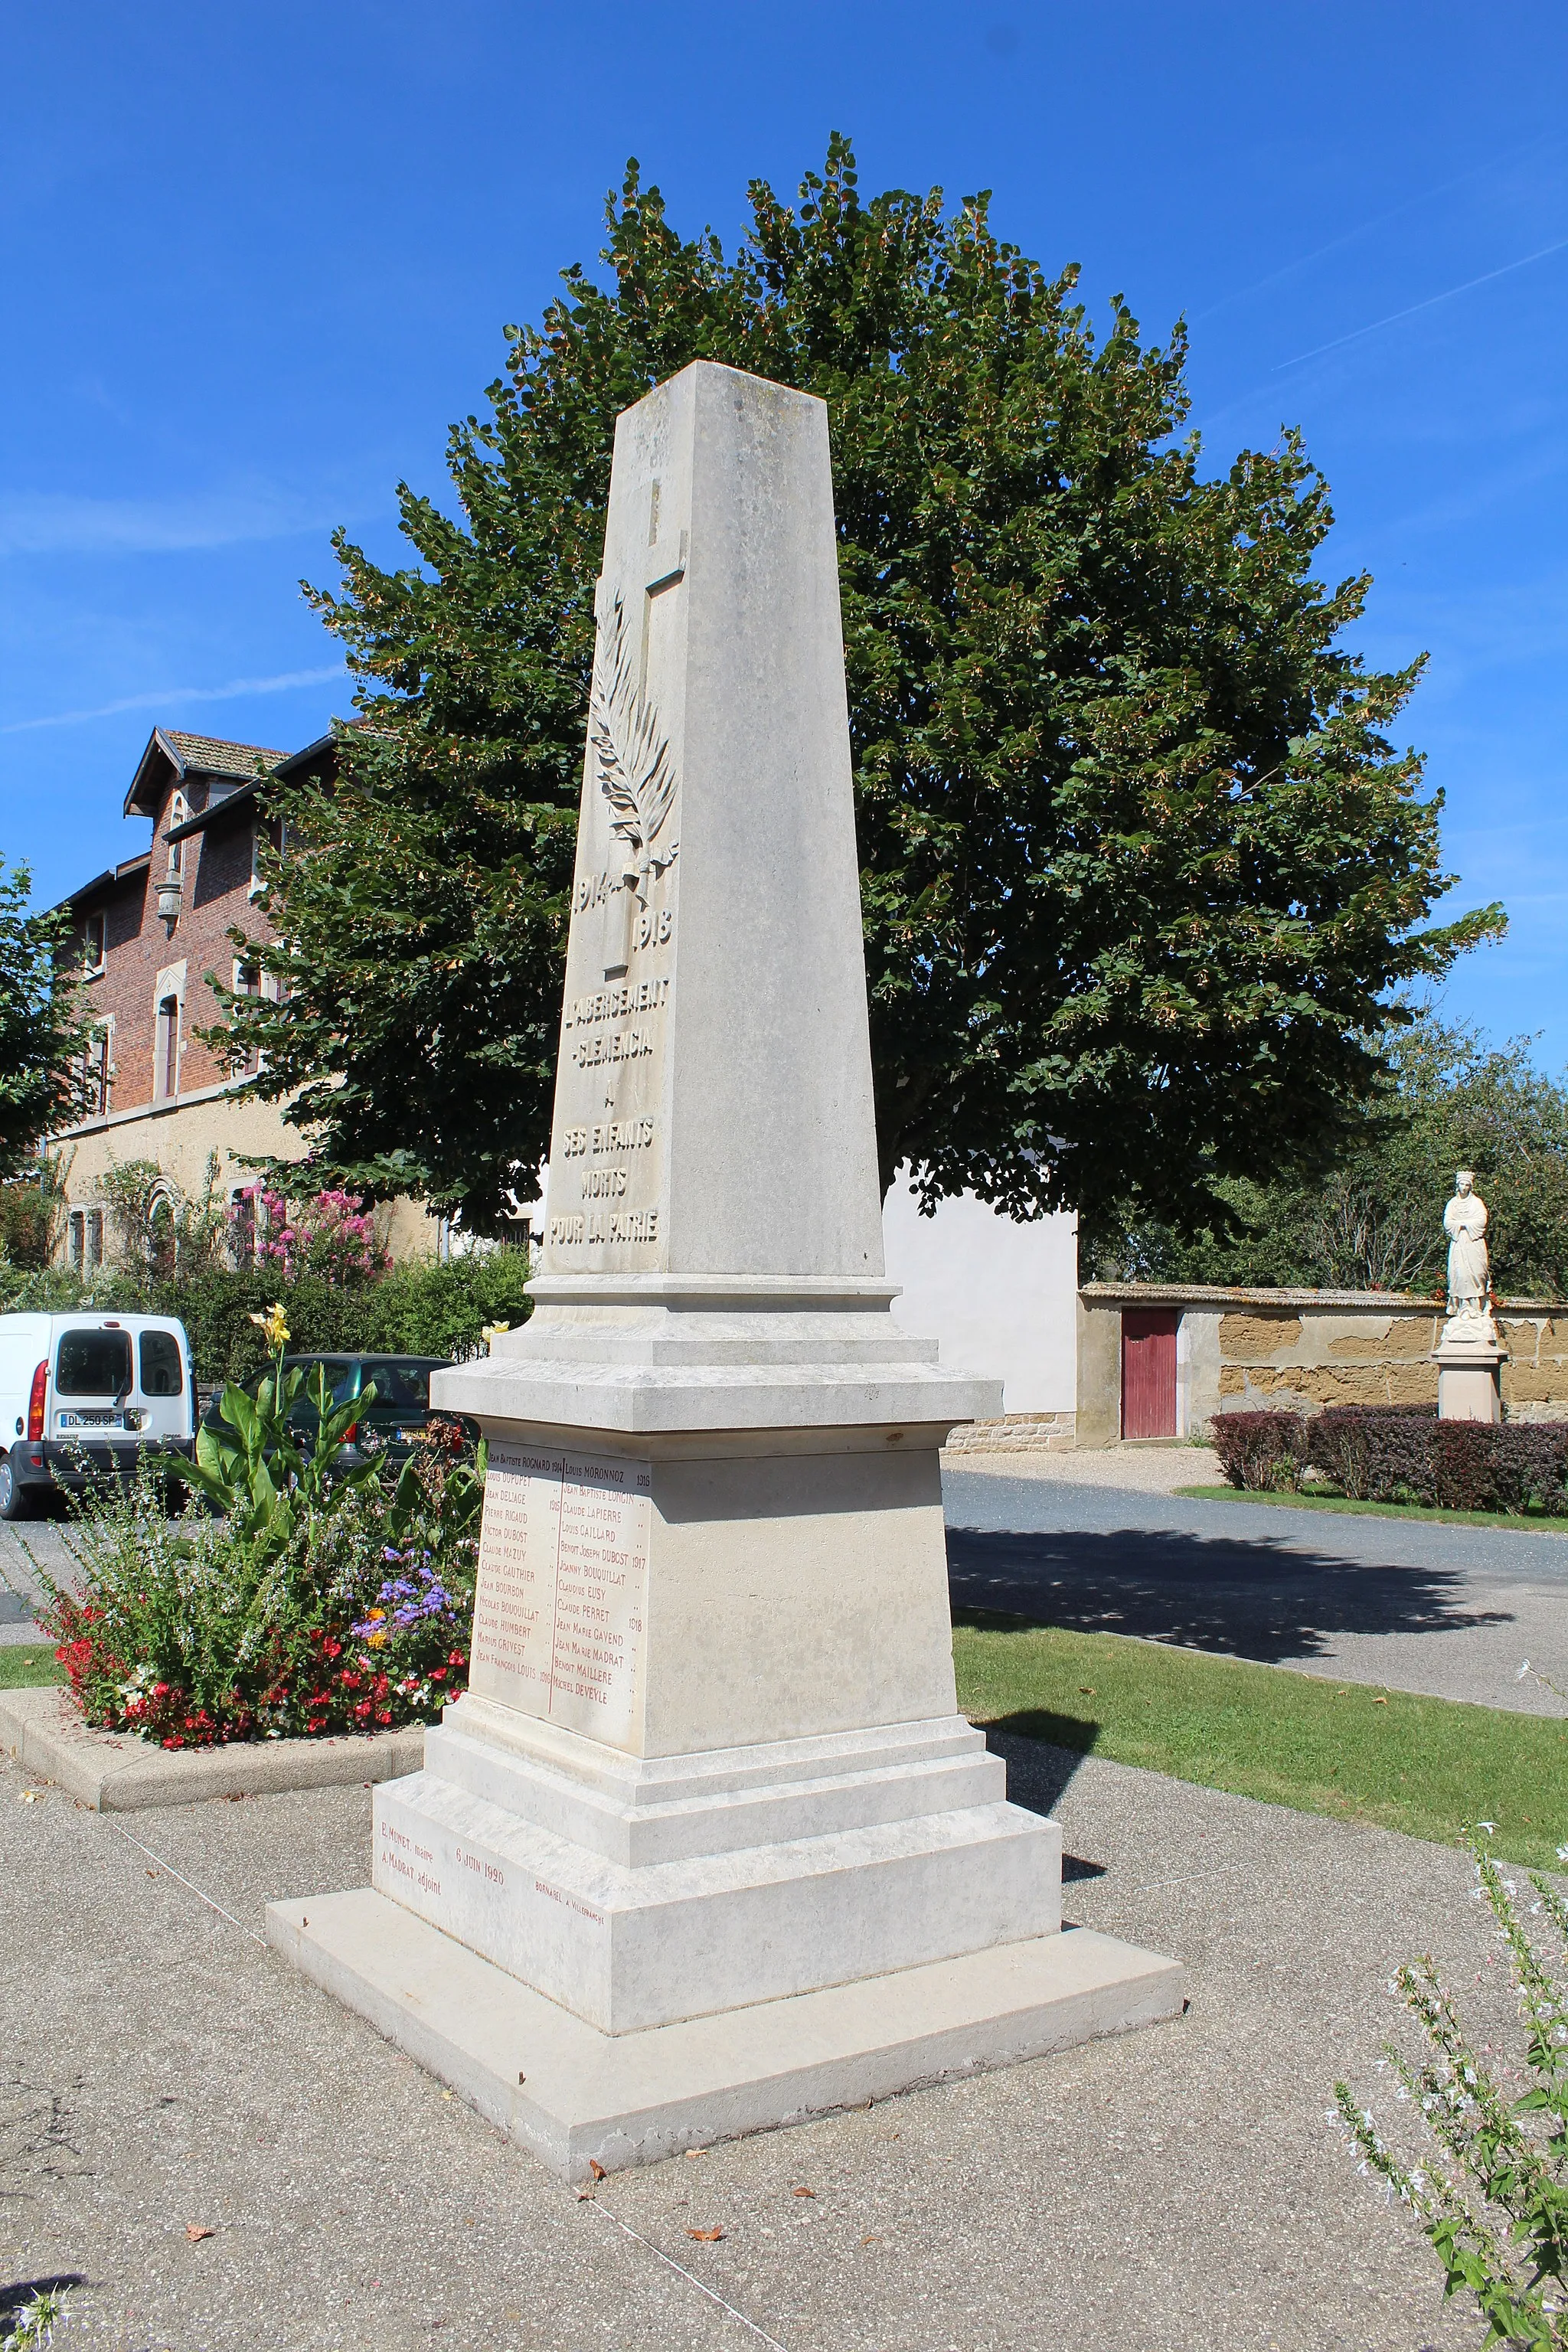 Photo showing: Monument en l'honneur des soldats de L'Abergement-Clémenciat morts au combat.
À noter que le nom de la commune sur le monument est L'Abergement-Clémencia.